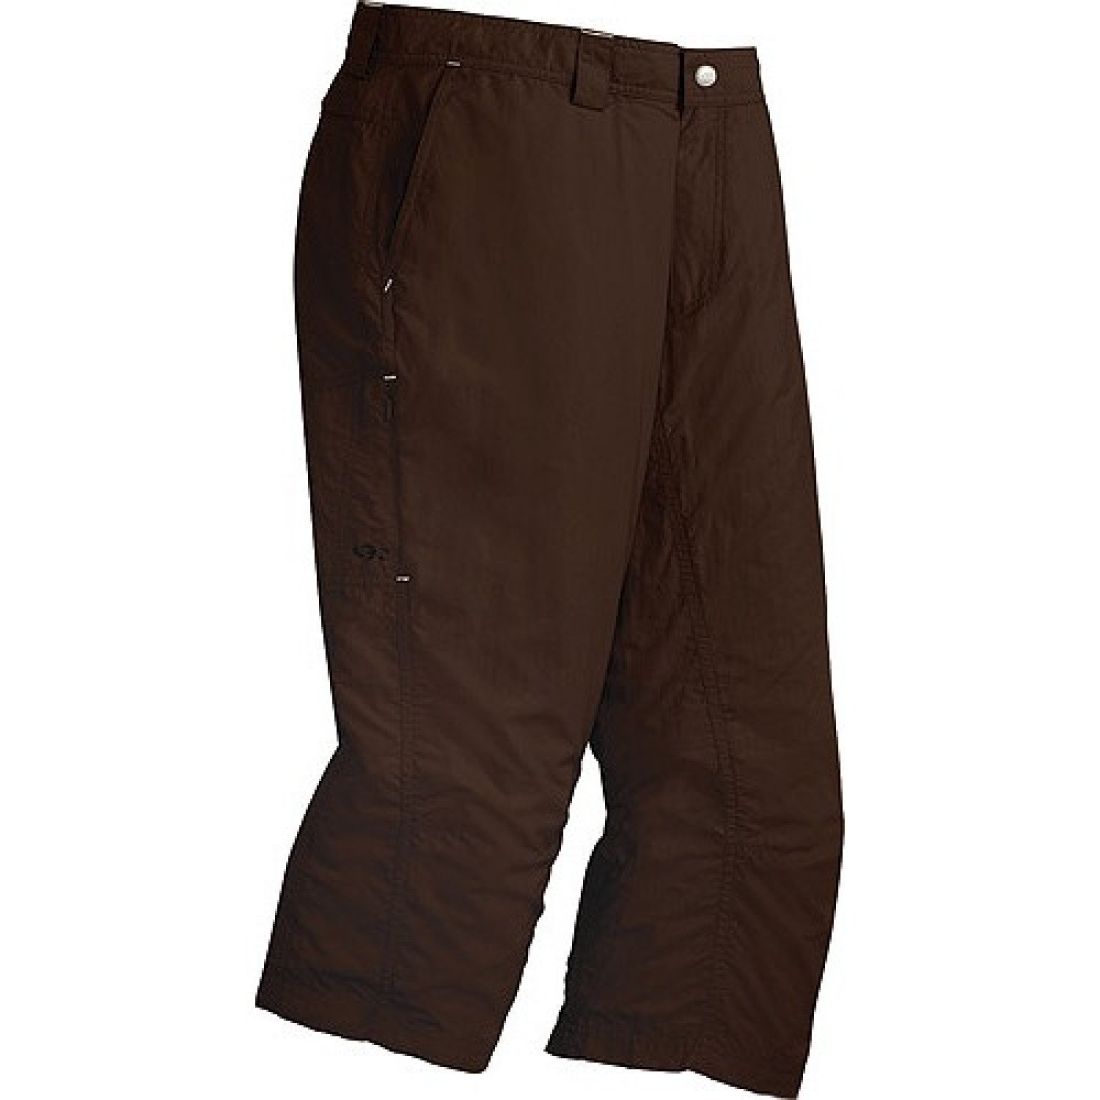 Outdoor Research - Укороченные спортивные брюки Patos 3/4 Pants